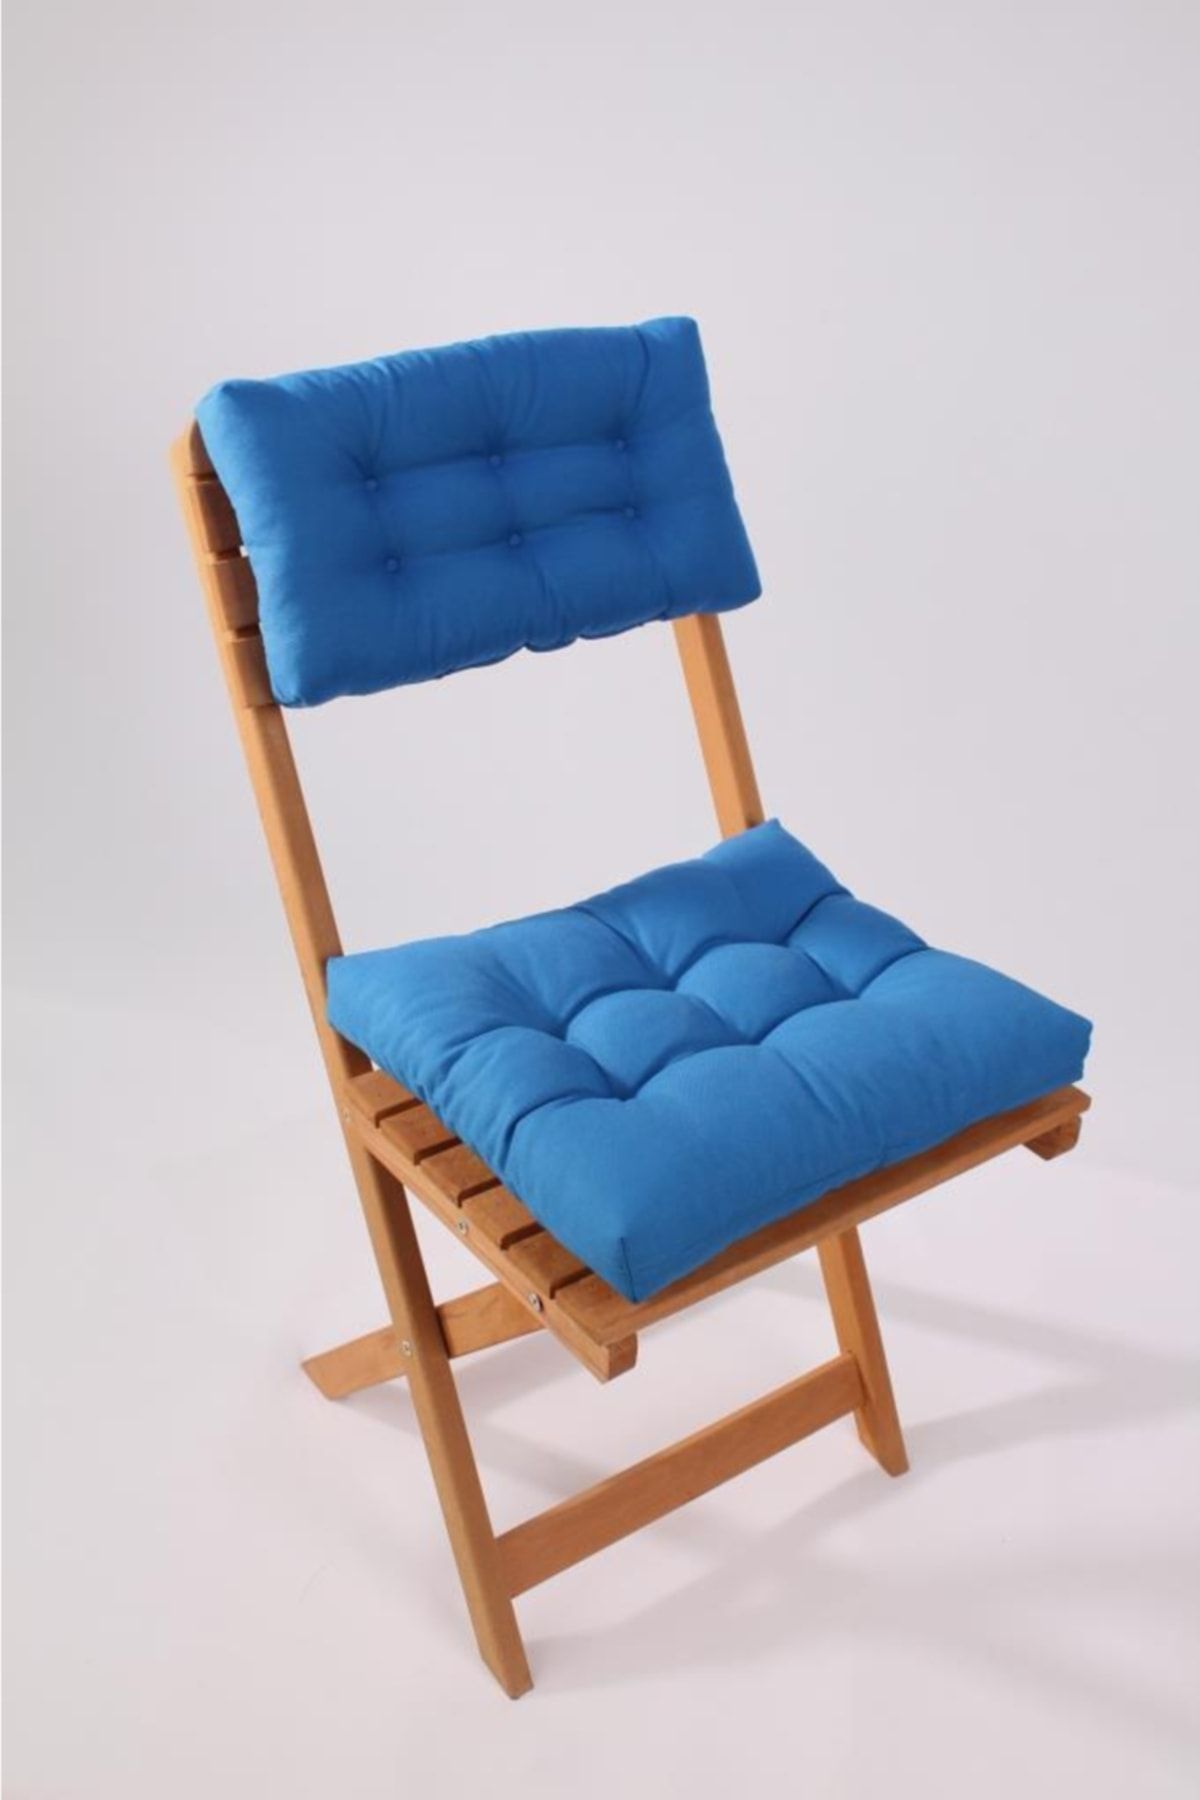 ALTINPAMUK Lüx Bistro Mutfak Bahçe Sandalye Minderi Sırtlıklı Mavi (MİNDER VE SIRT MİNDERİ)